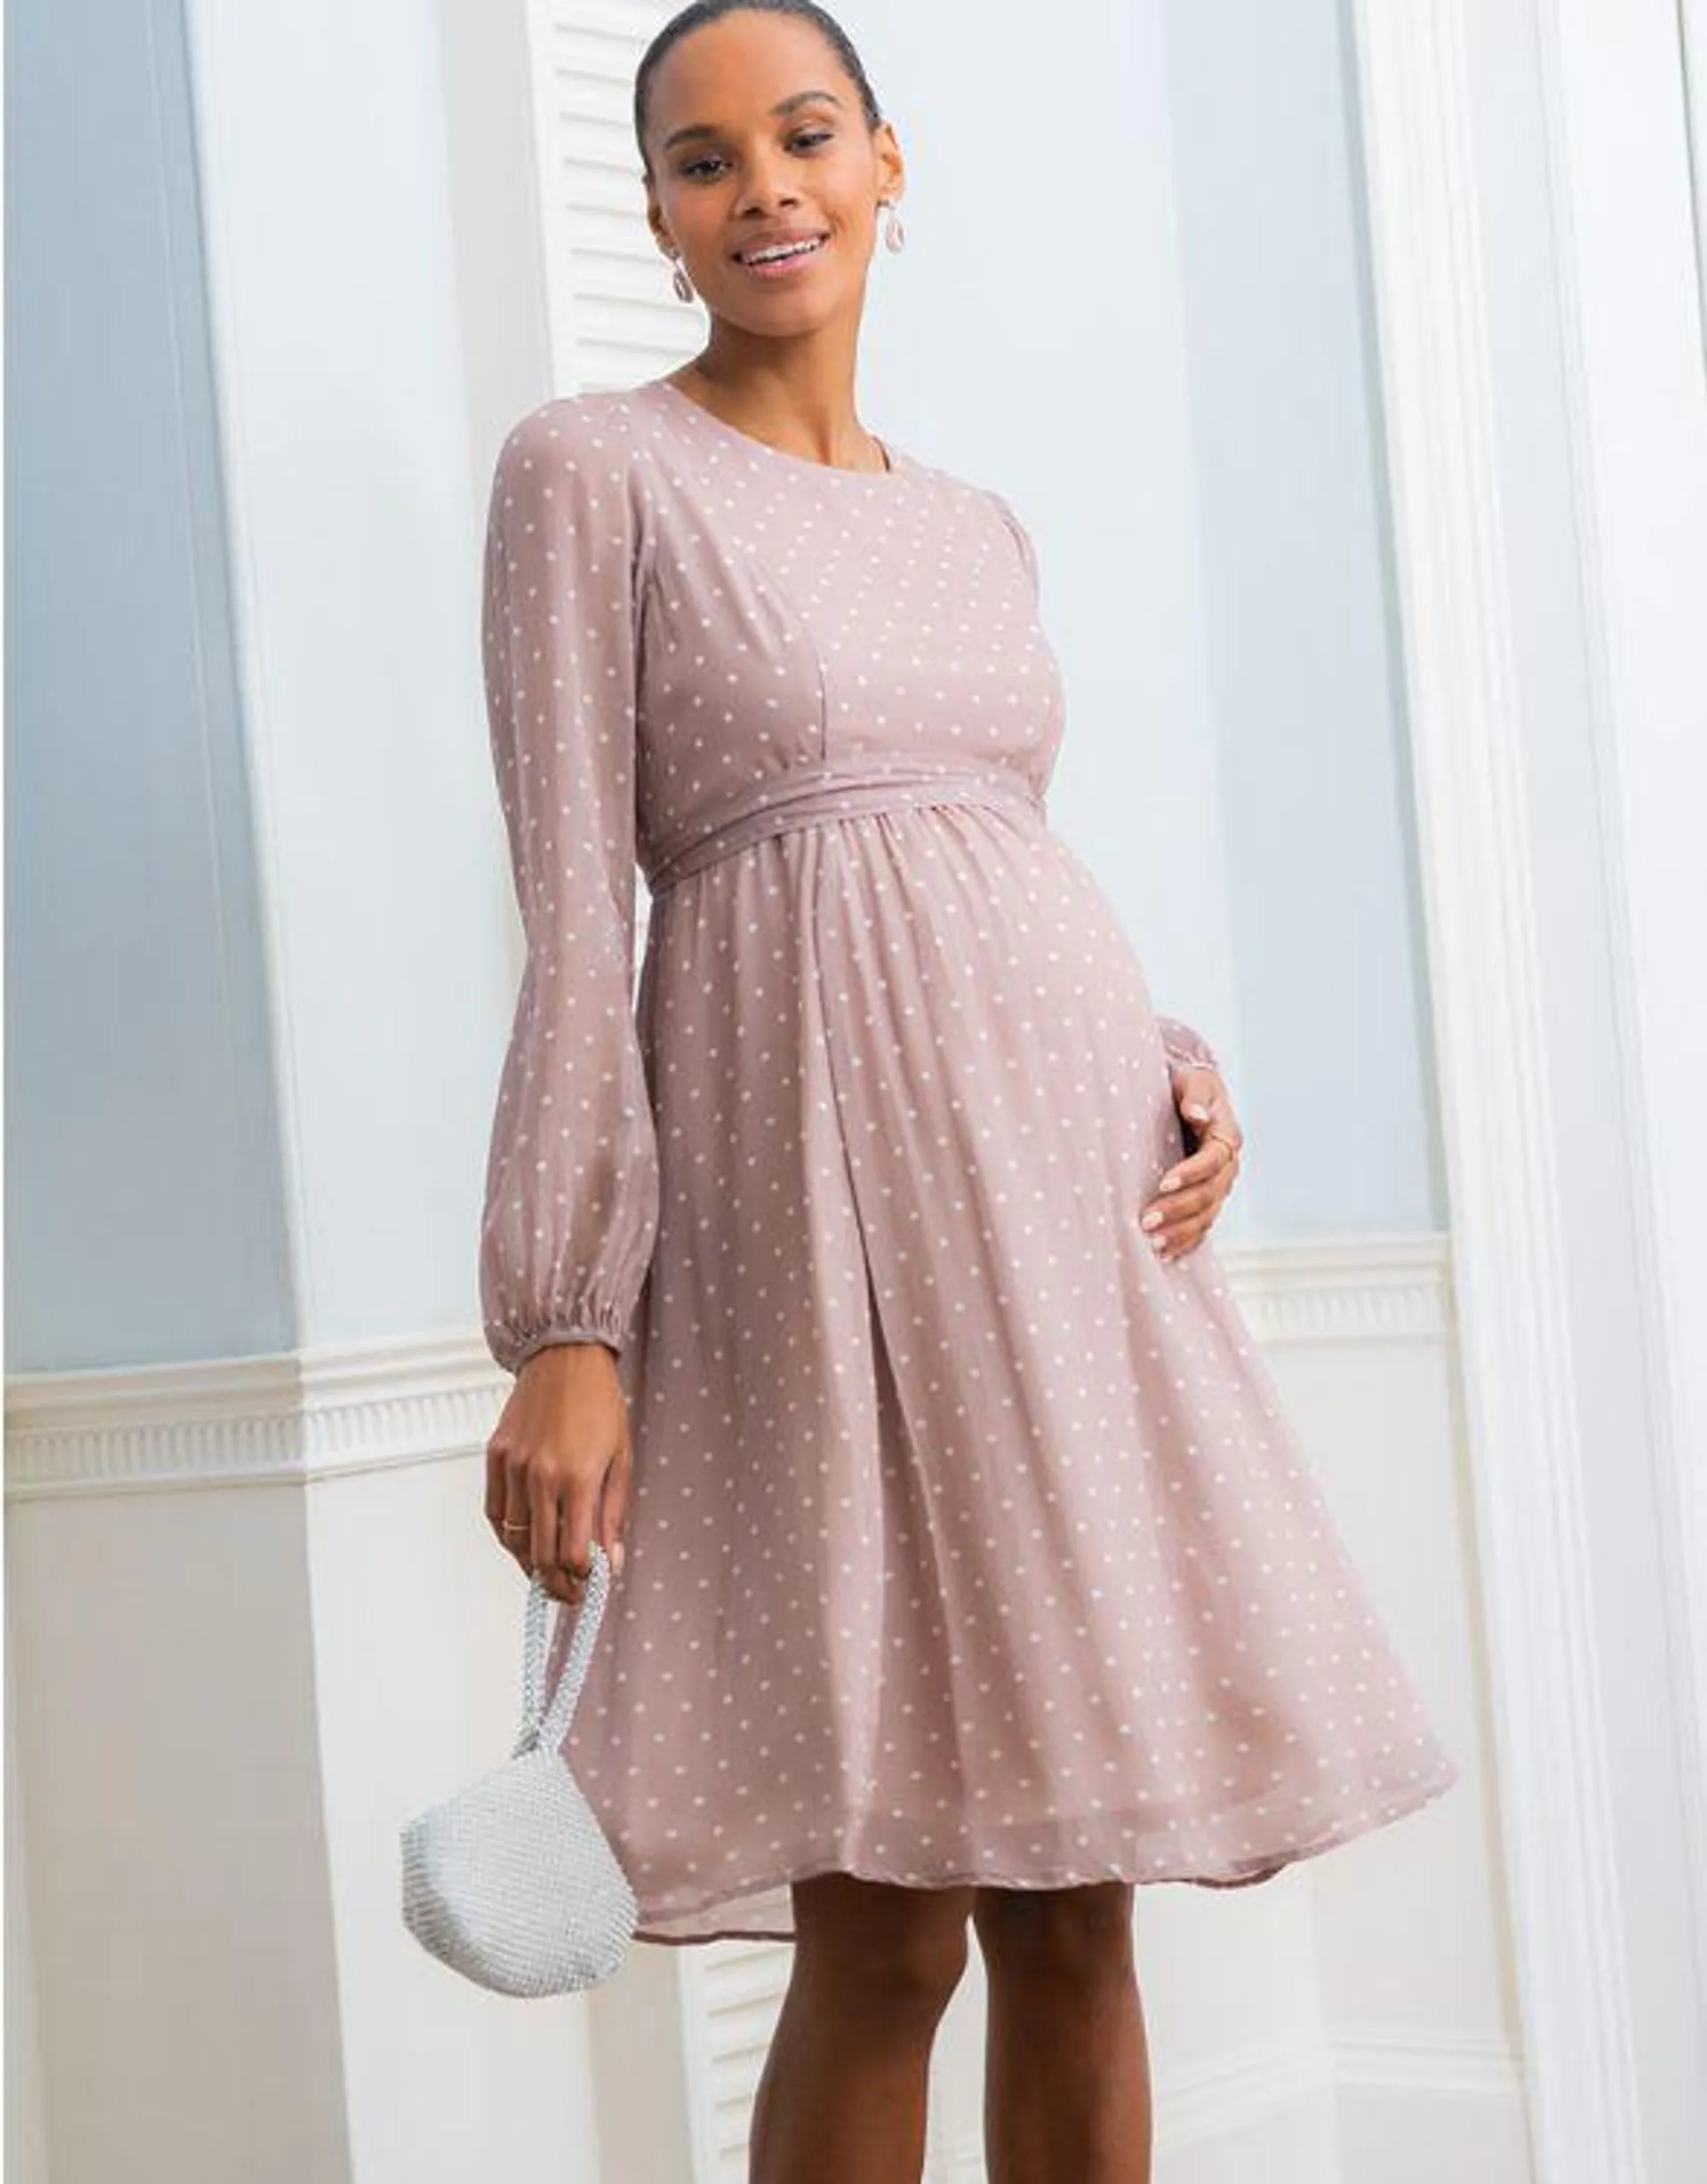 Taupe & White Spot Chiffon Maternity to Nursing Dress